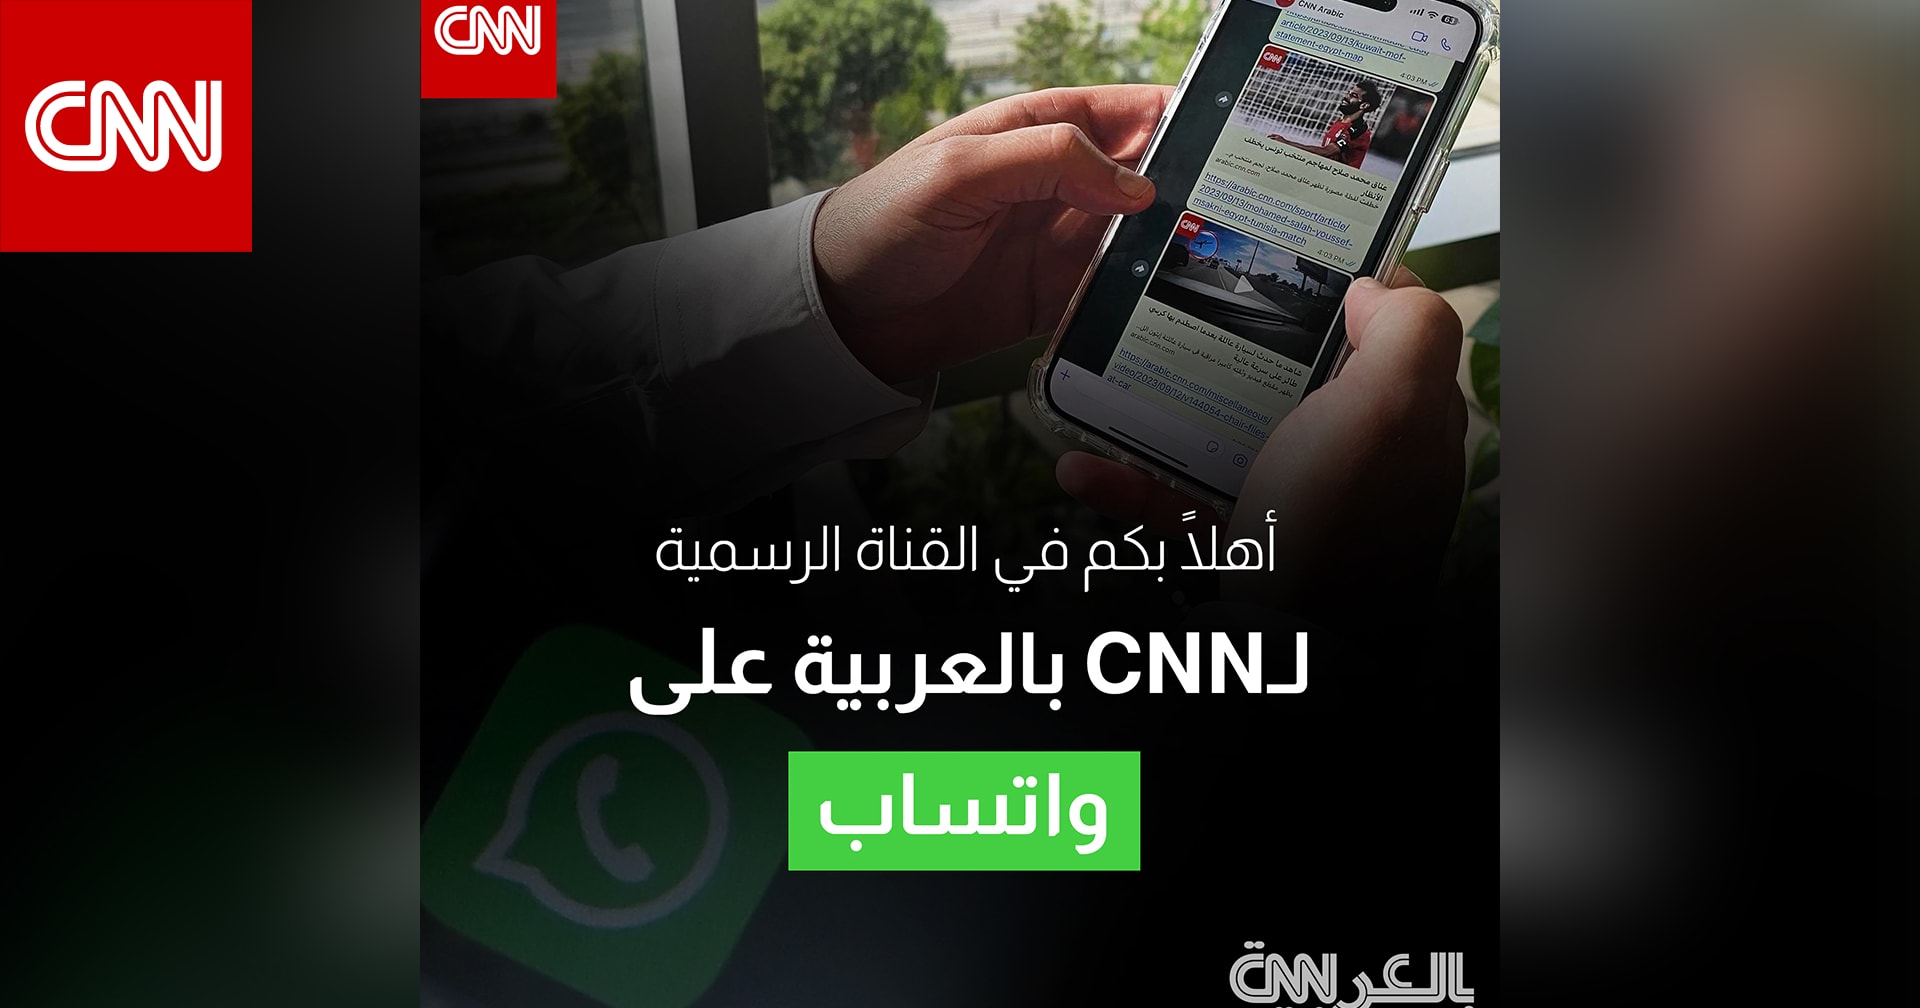 أهم الأخبار اليومية والعاجلة من CNN بالعربية عبر قناتنا على واتساب